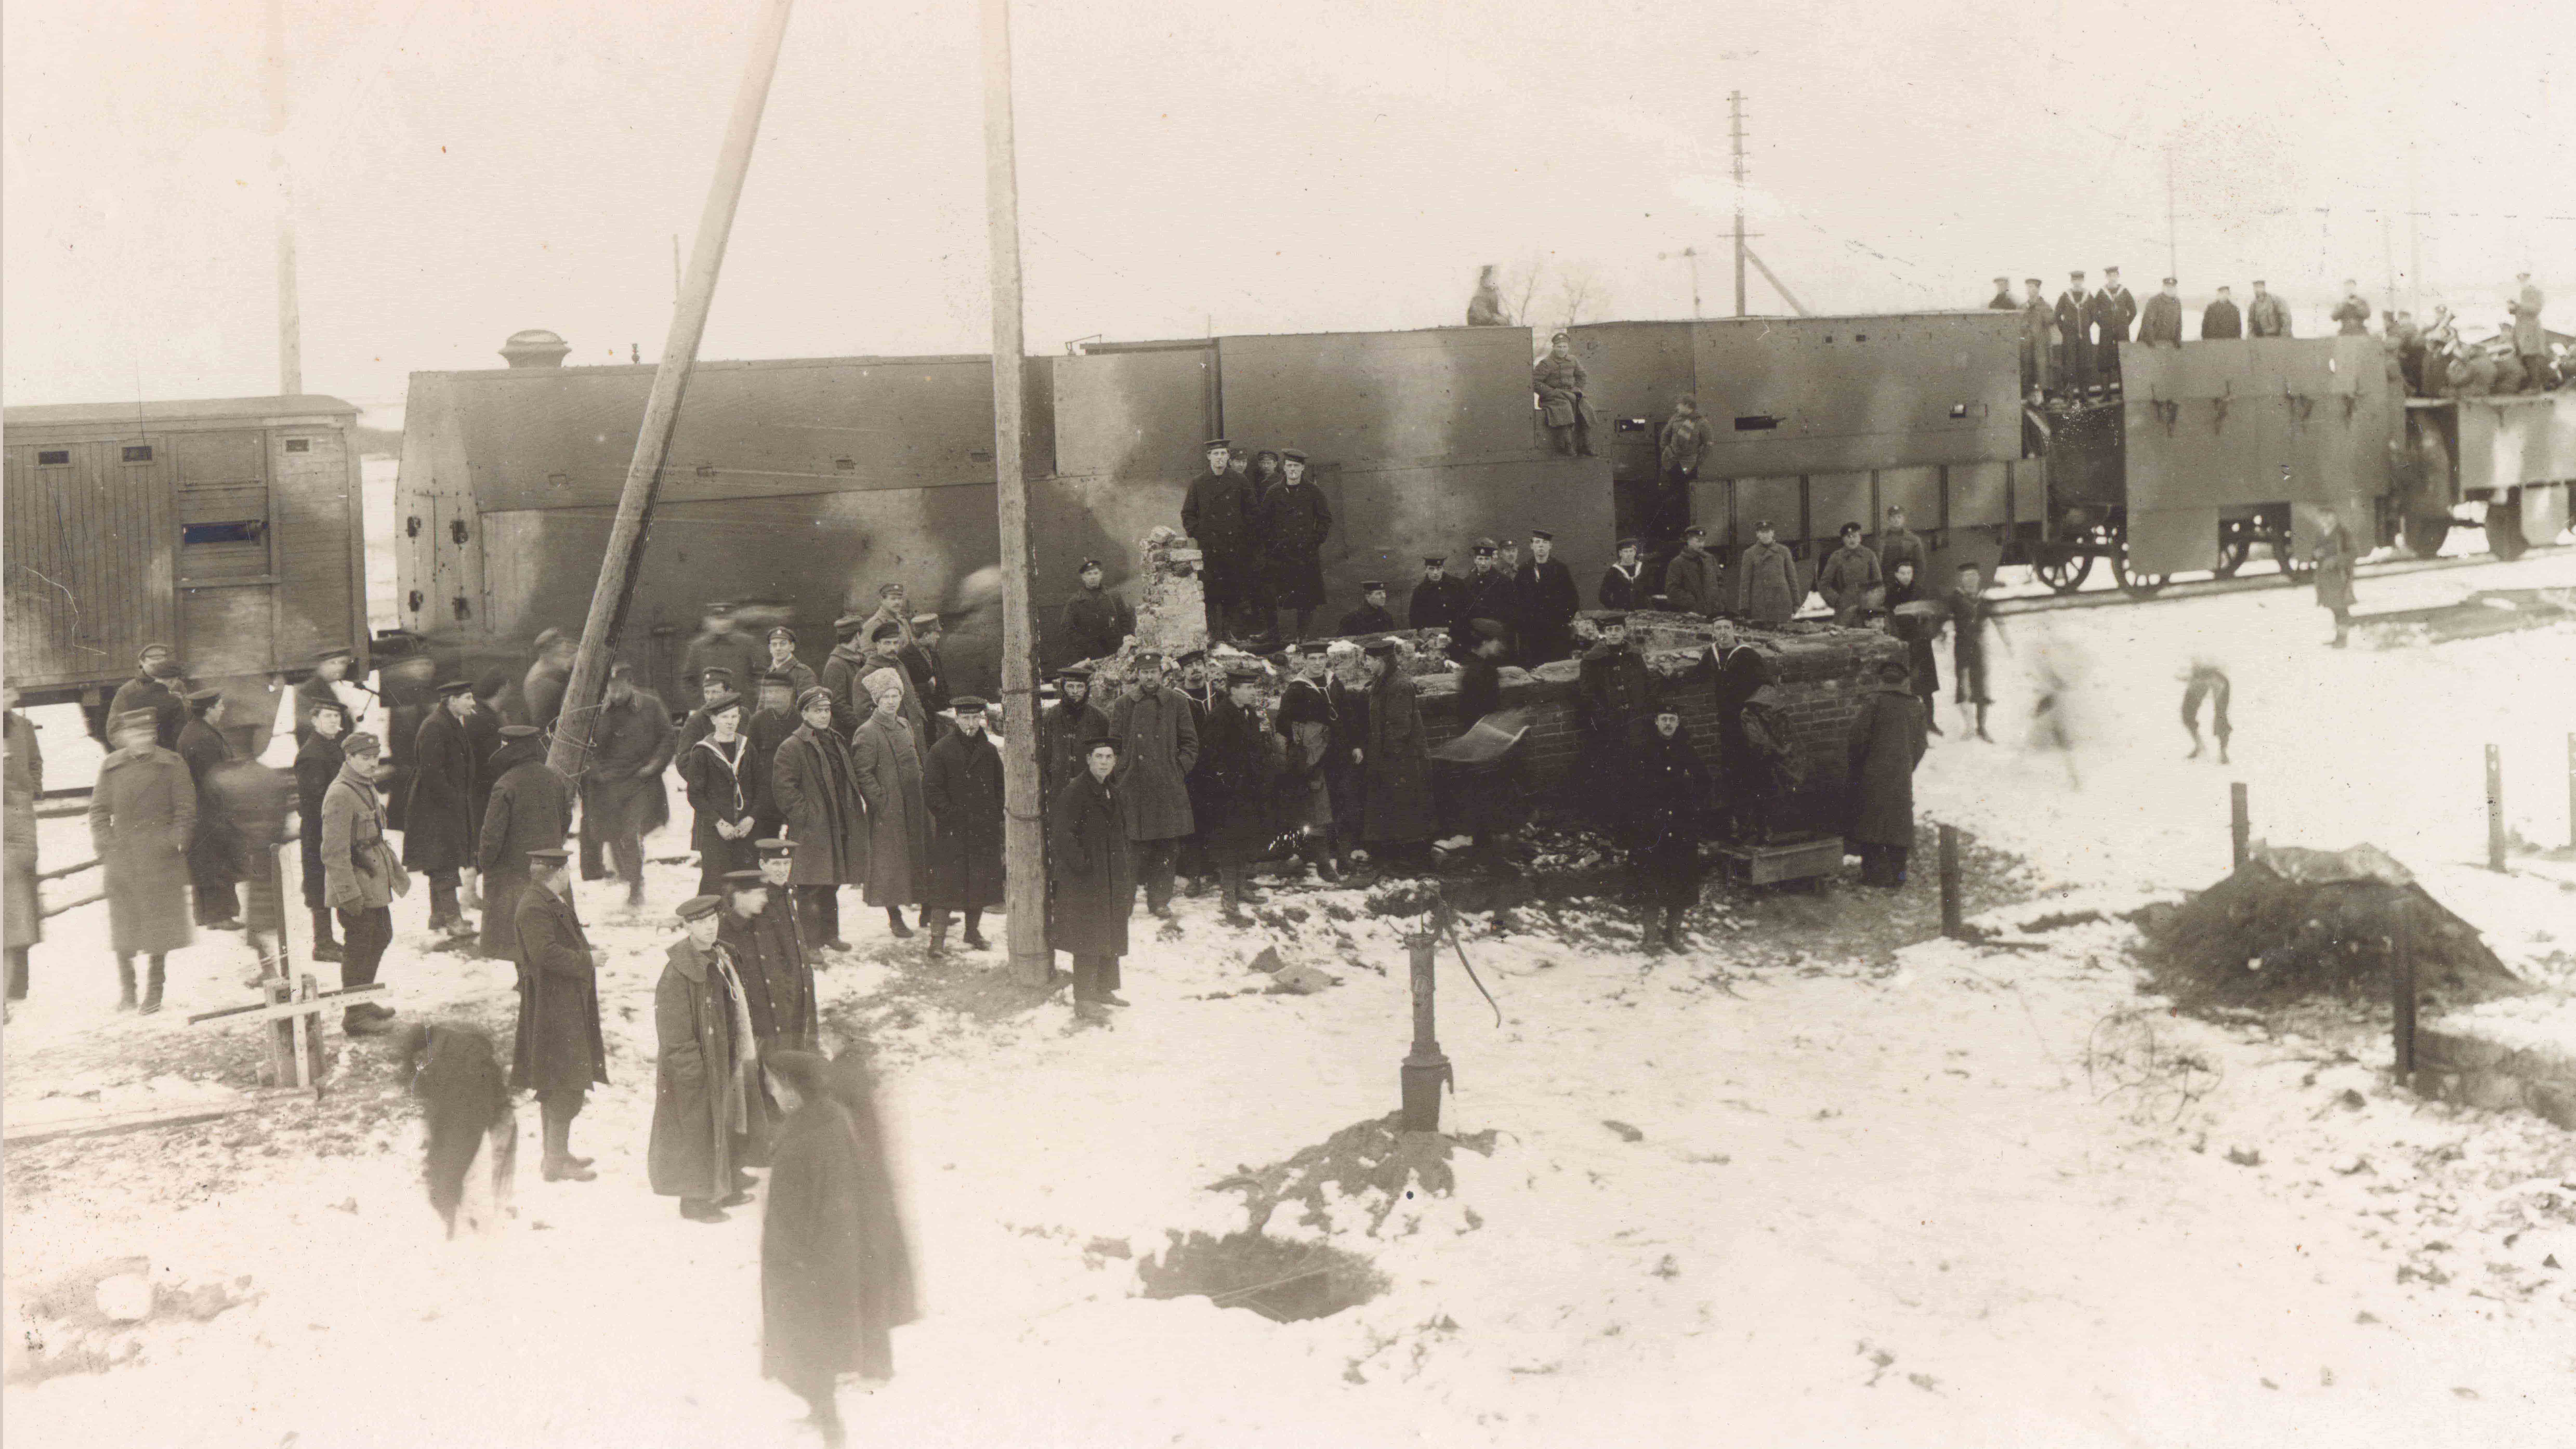 Bruņotais vilciens “Kalpaks” Liepājā 1919. gada novembrī. Pie tā sapulcējušies Latvijas armijas karavīri un Lielbritānijas kara flotes jūrnieki